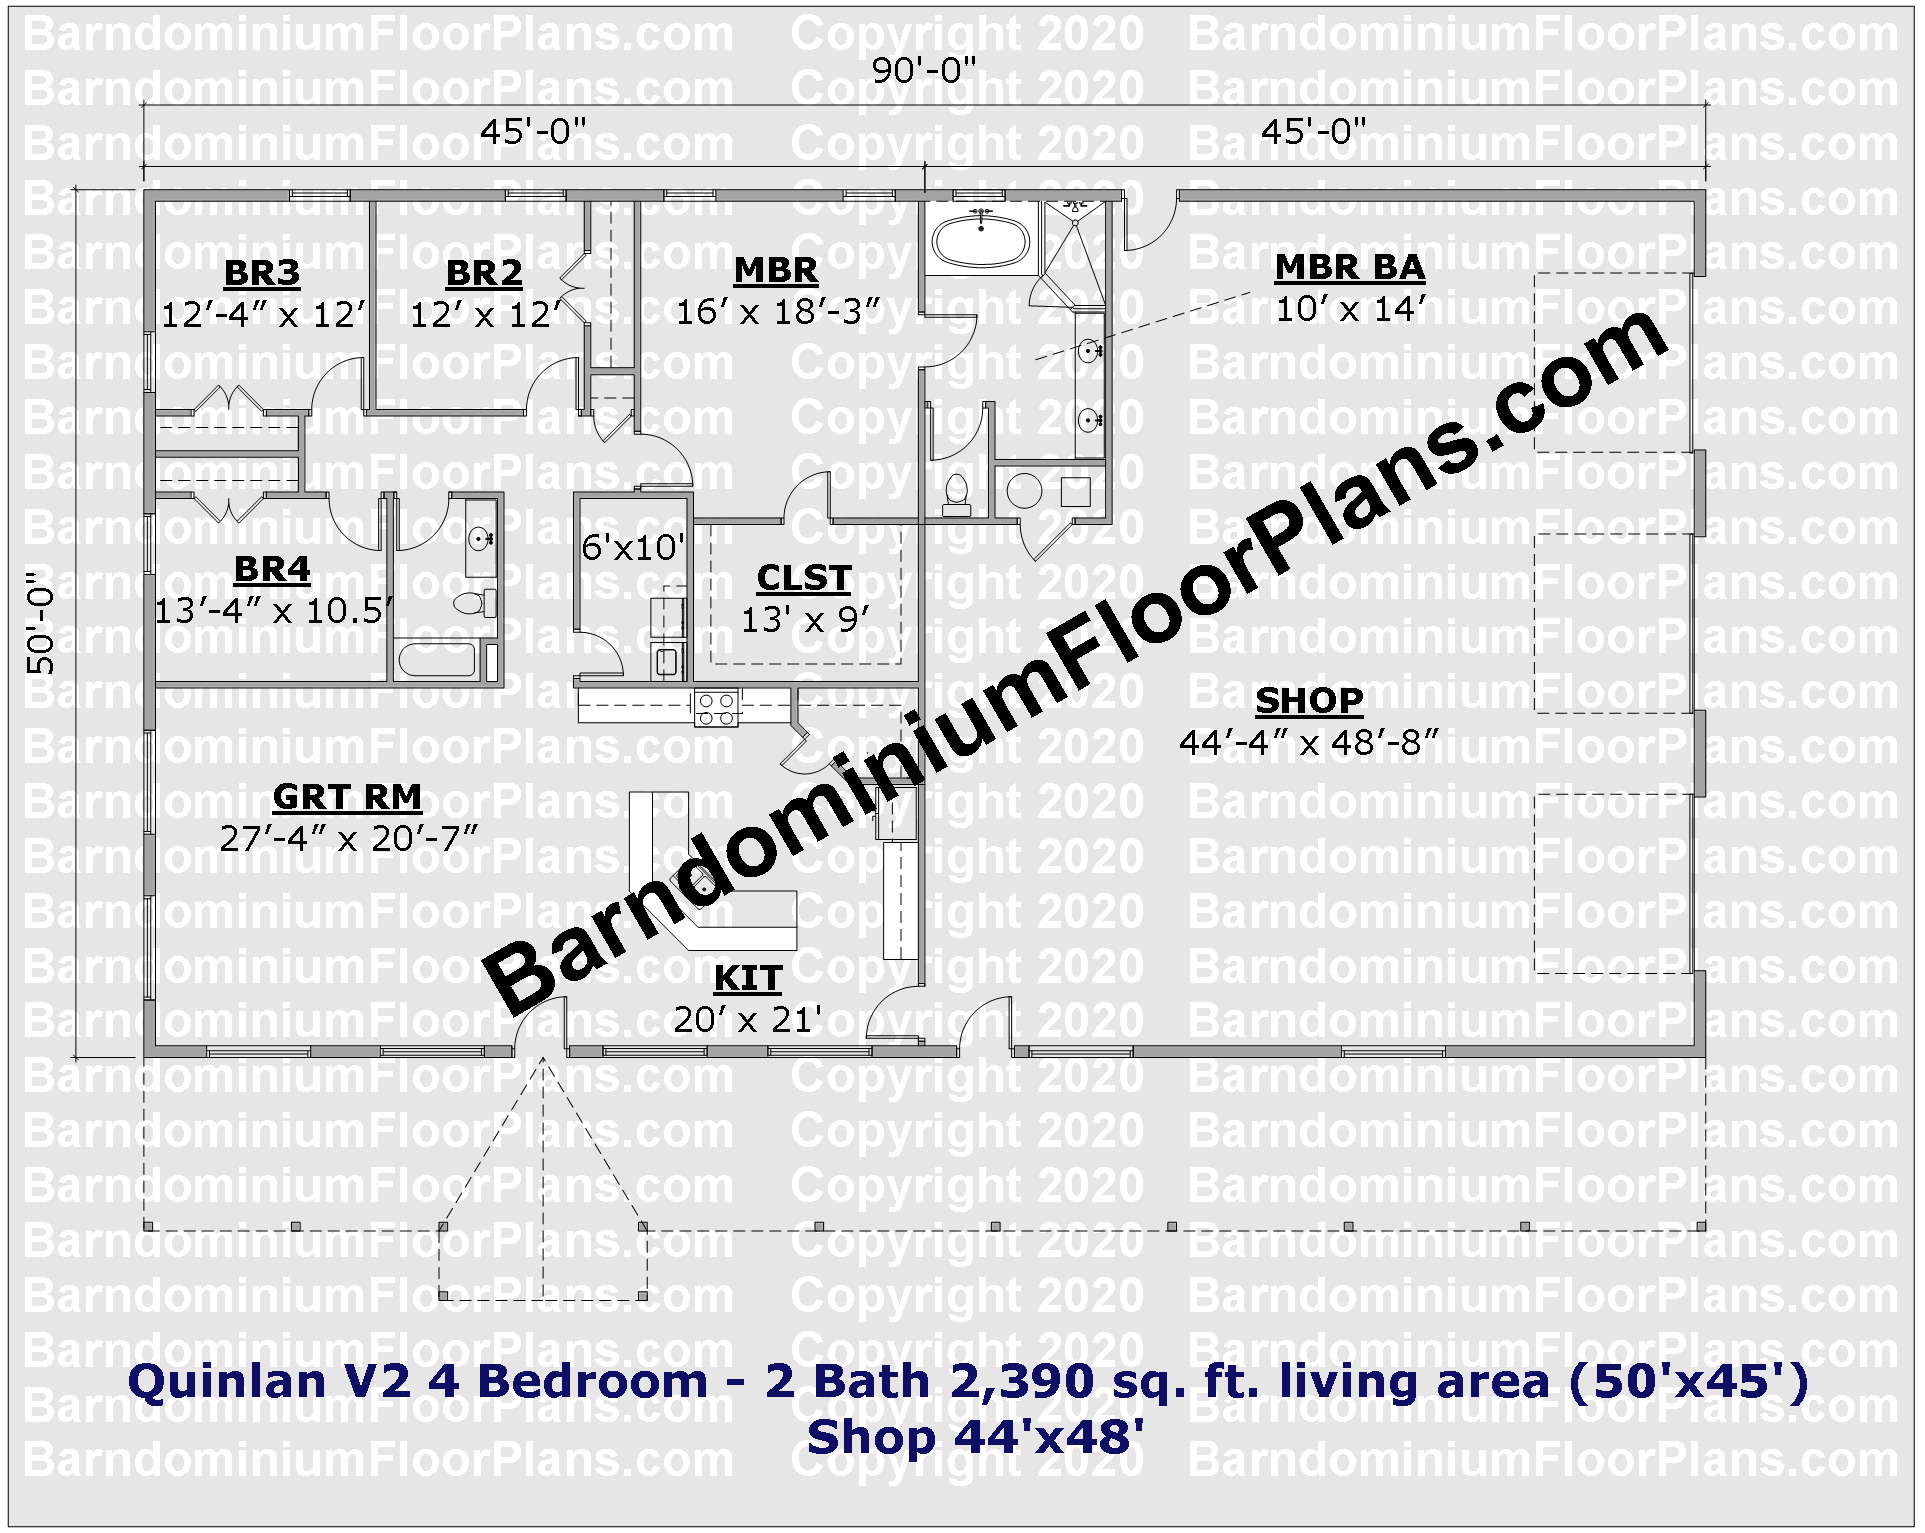 50 foot wide barndominium floor plan 4 bedroom 2 bath with garage - Quinlan